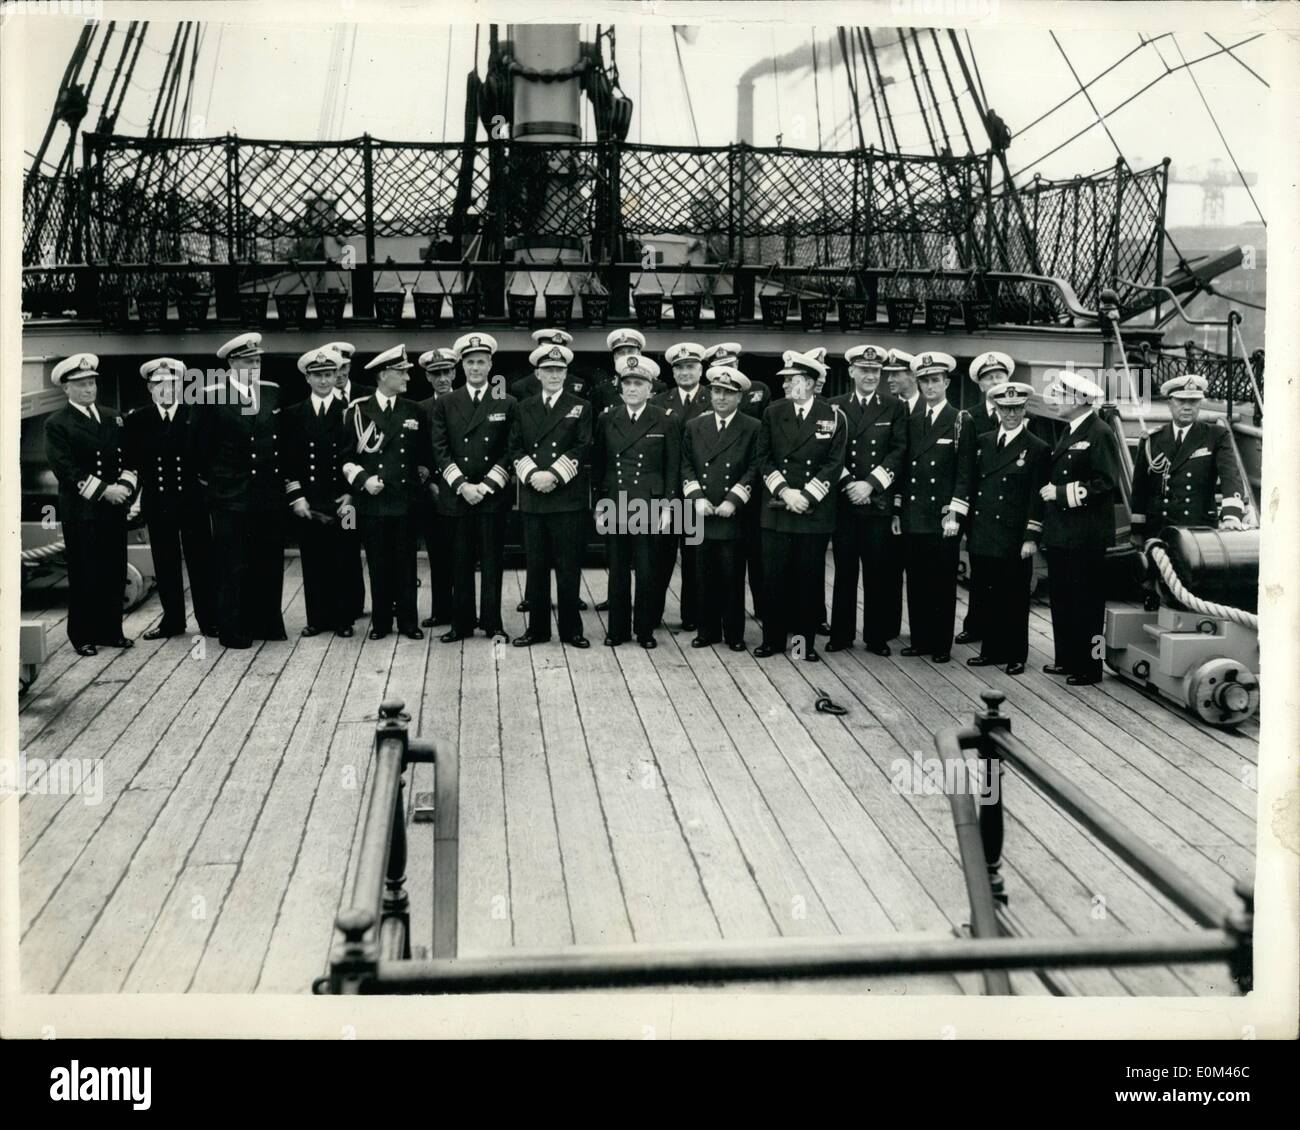 Jun 06, 1953 - Revisión de la flota a los huéspedes visitar H.M.S Victoria en Portsmouth. Los oficiales a bordo del H.M.S. Victoria.. Los oficiales constituyen la visita de buques de guerra ahora reunidos frente a Portsmouth para la semana próxima revisión por parte de la flota de S.M. la Reina - fueron invitados a bordo del H.M.S. Victoria para el almuerzo. Muestra Fotográfica Keystone:- Grupo de visitantes oficiales a bordo de la victoria de hoy.. Son L-R: Almirante G.W.G. Simpson, bandera oficial; el capitán Subs O.I. Rudakov de Rusia; Comandante del GC. Herlofsen (Noruega); el capitán G.G.A.B. de marca (Suecia); Vice Almirante J.Wright (USA); el Almirante Sir John Edelsten (C. EN C Foto de stock